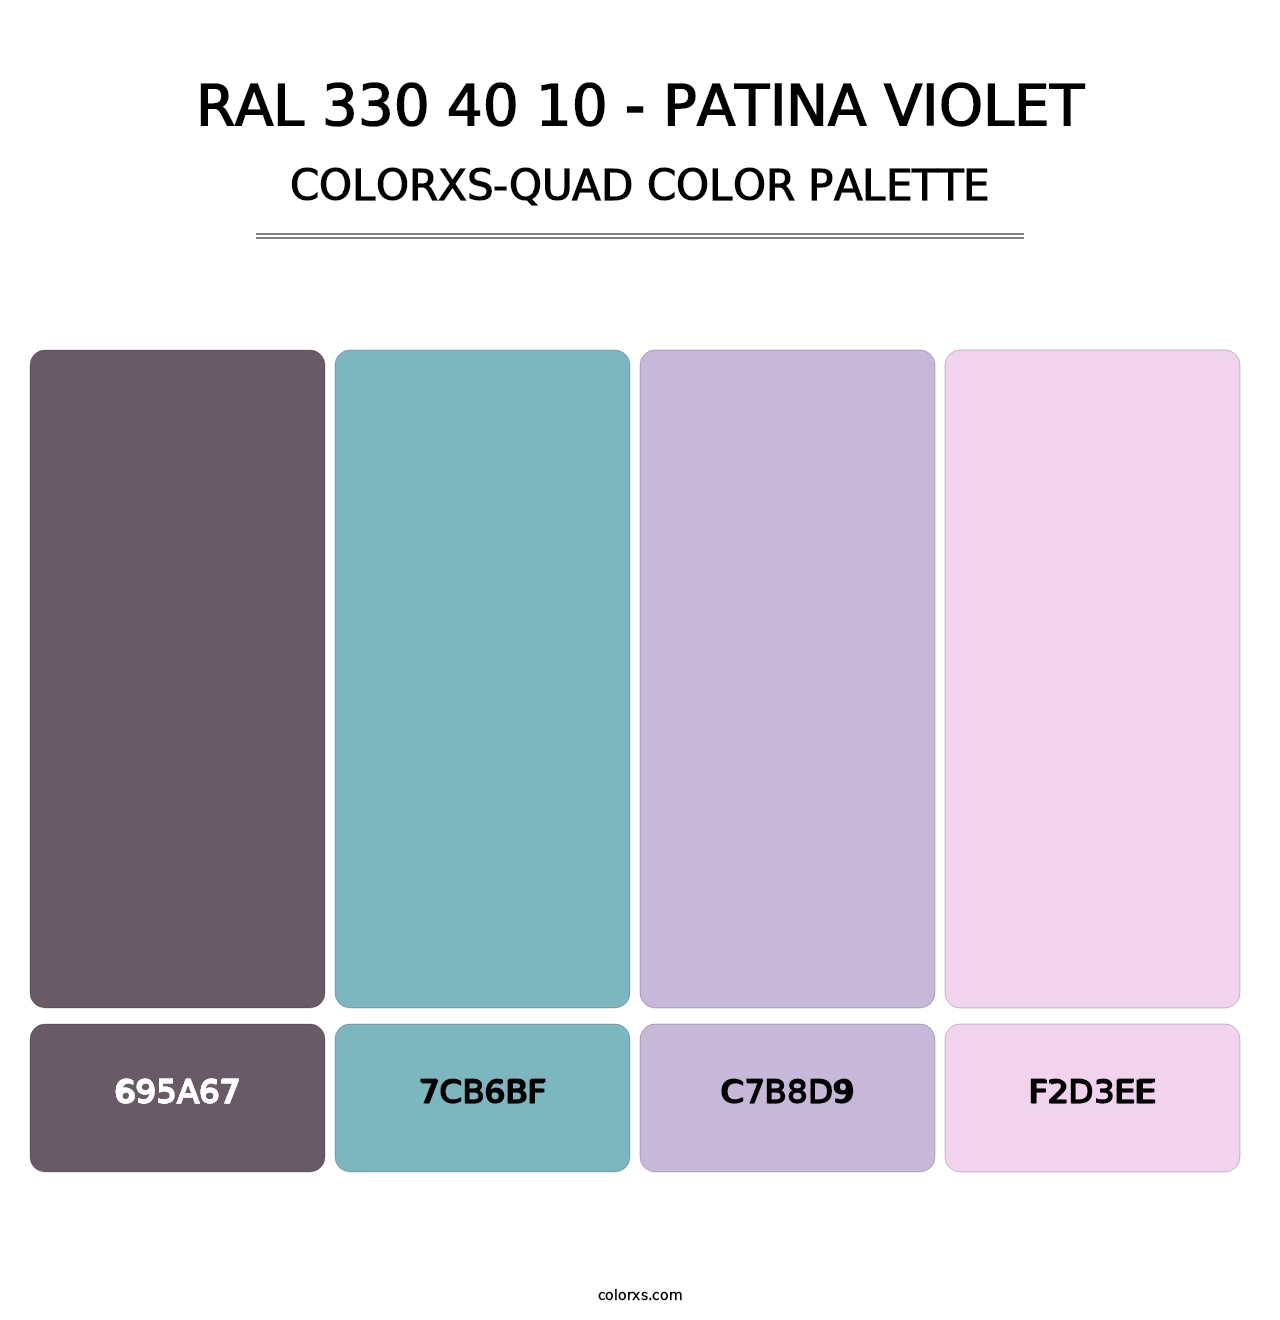 RAL 330 40 10 - Patina Violet - Colorxs Quad Palette